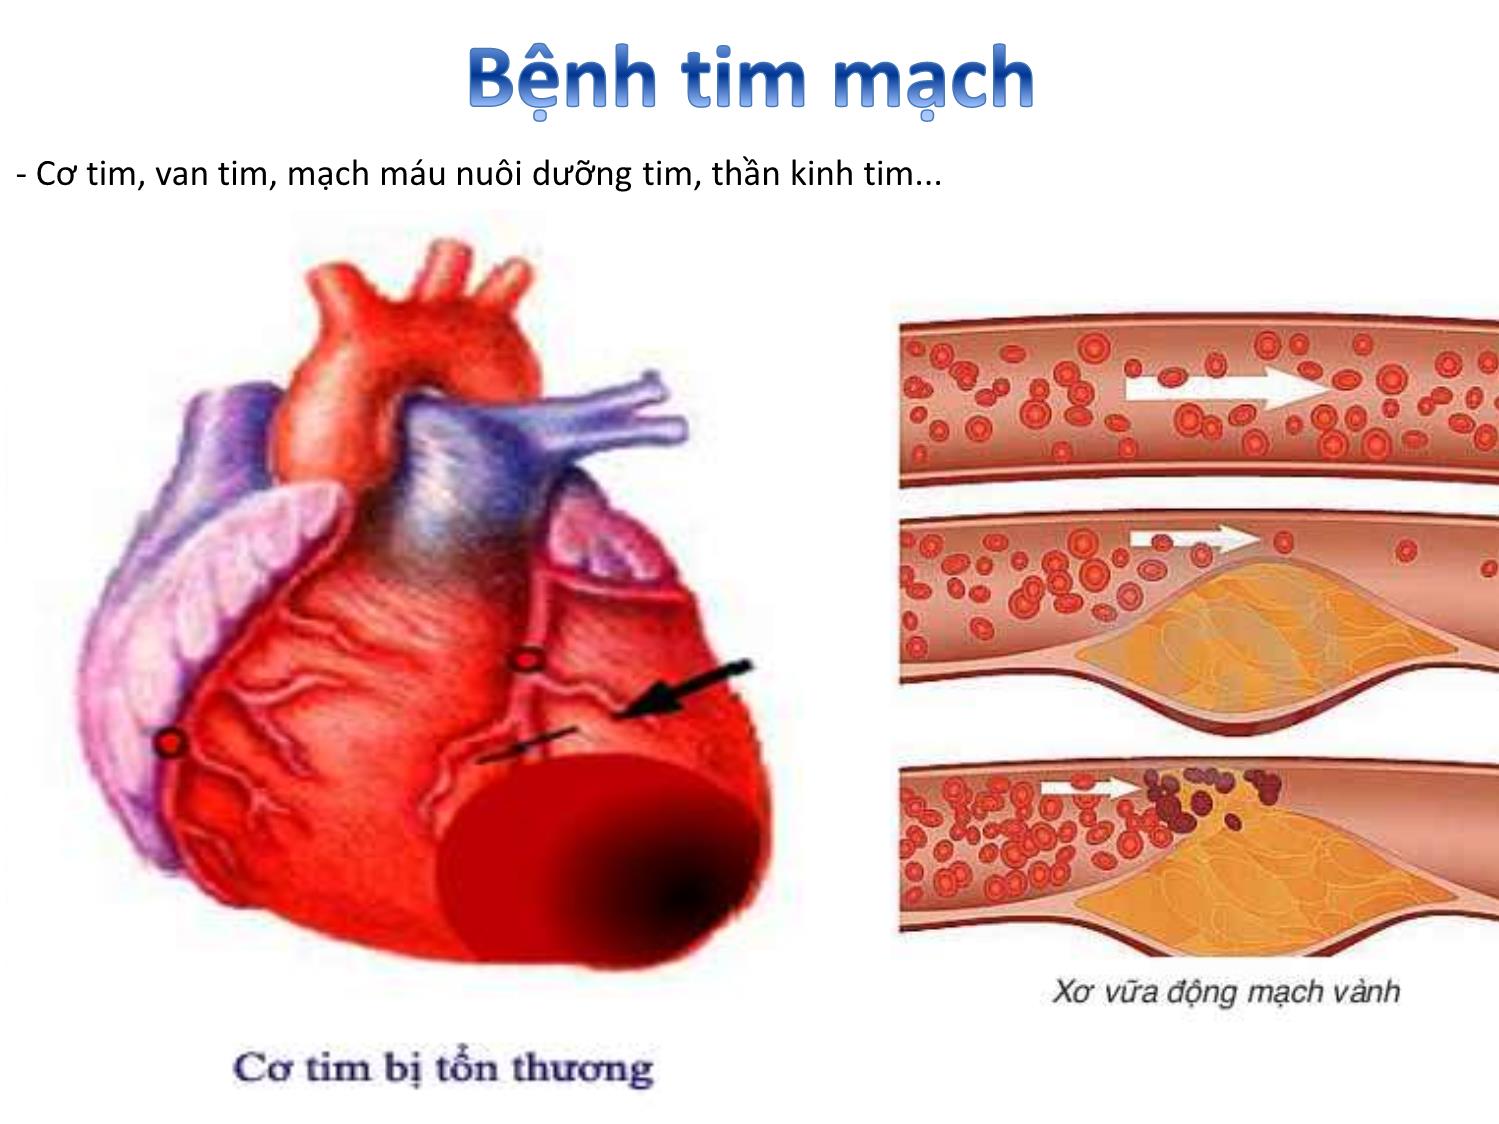 Bài giảng Nghiên cứu và ứng dụng tế bào gốc - Bài 6: Ứng dụng tế bào gốc trong điều trị bệnh tim mạch trang 3